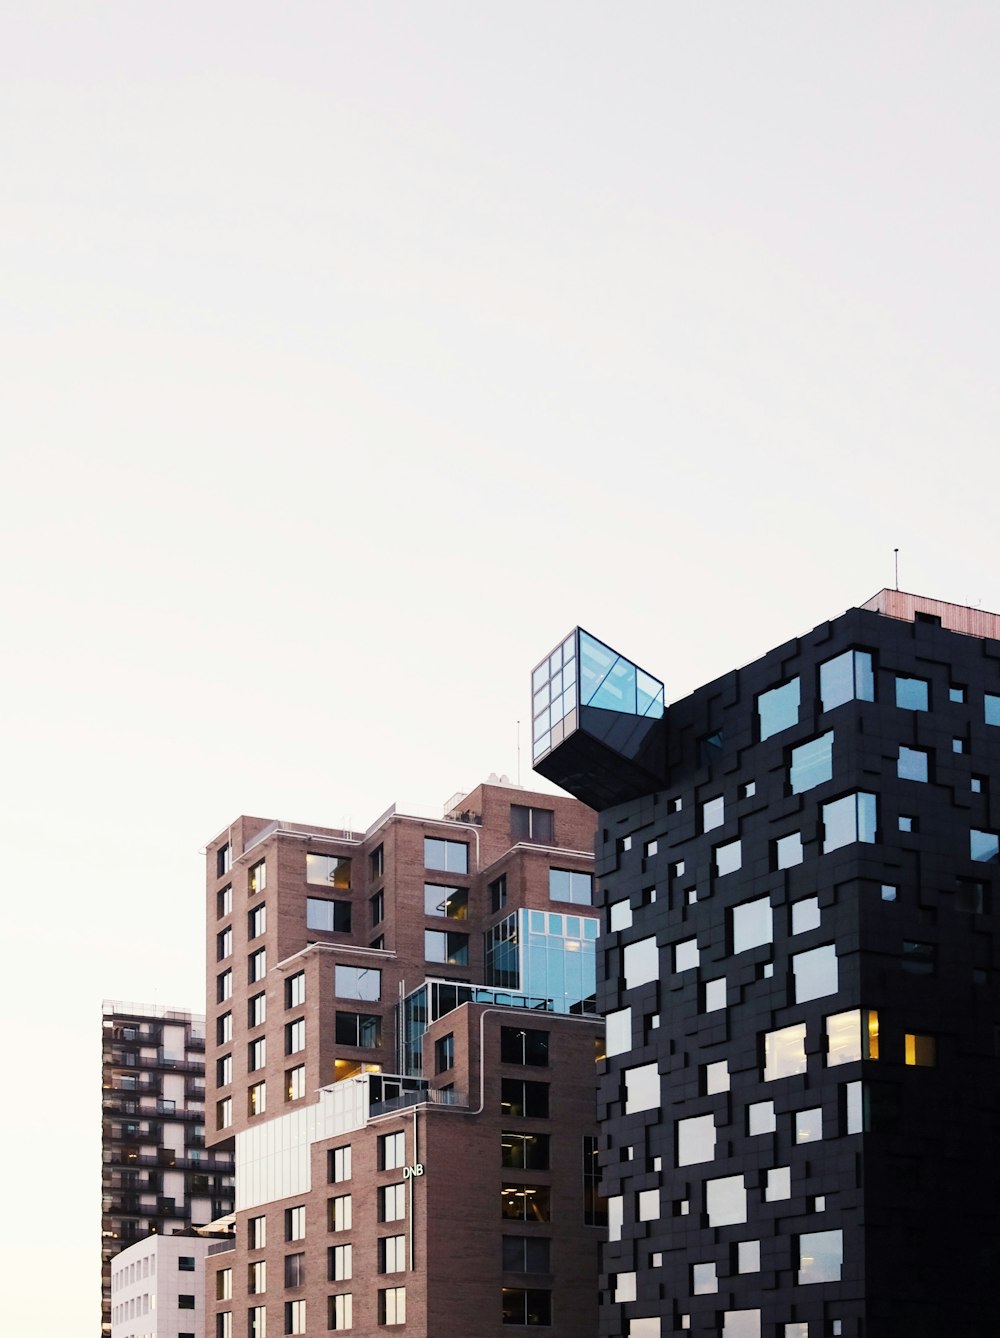 Architekturfotografie von braunen und schwarzen Gebäuden